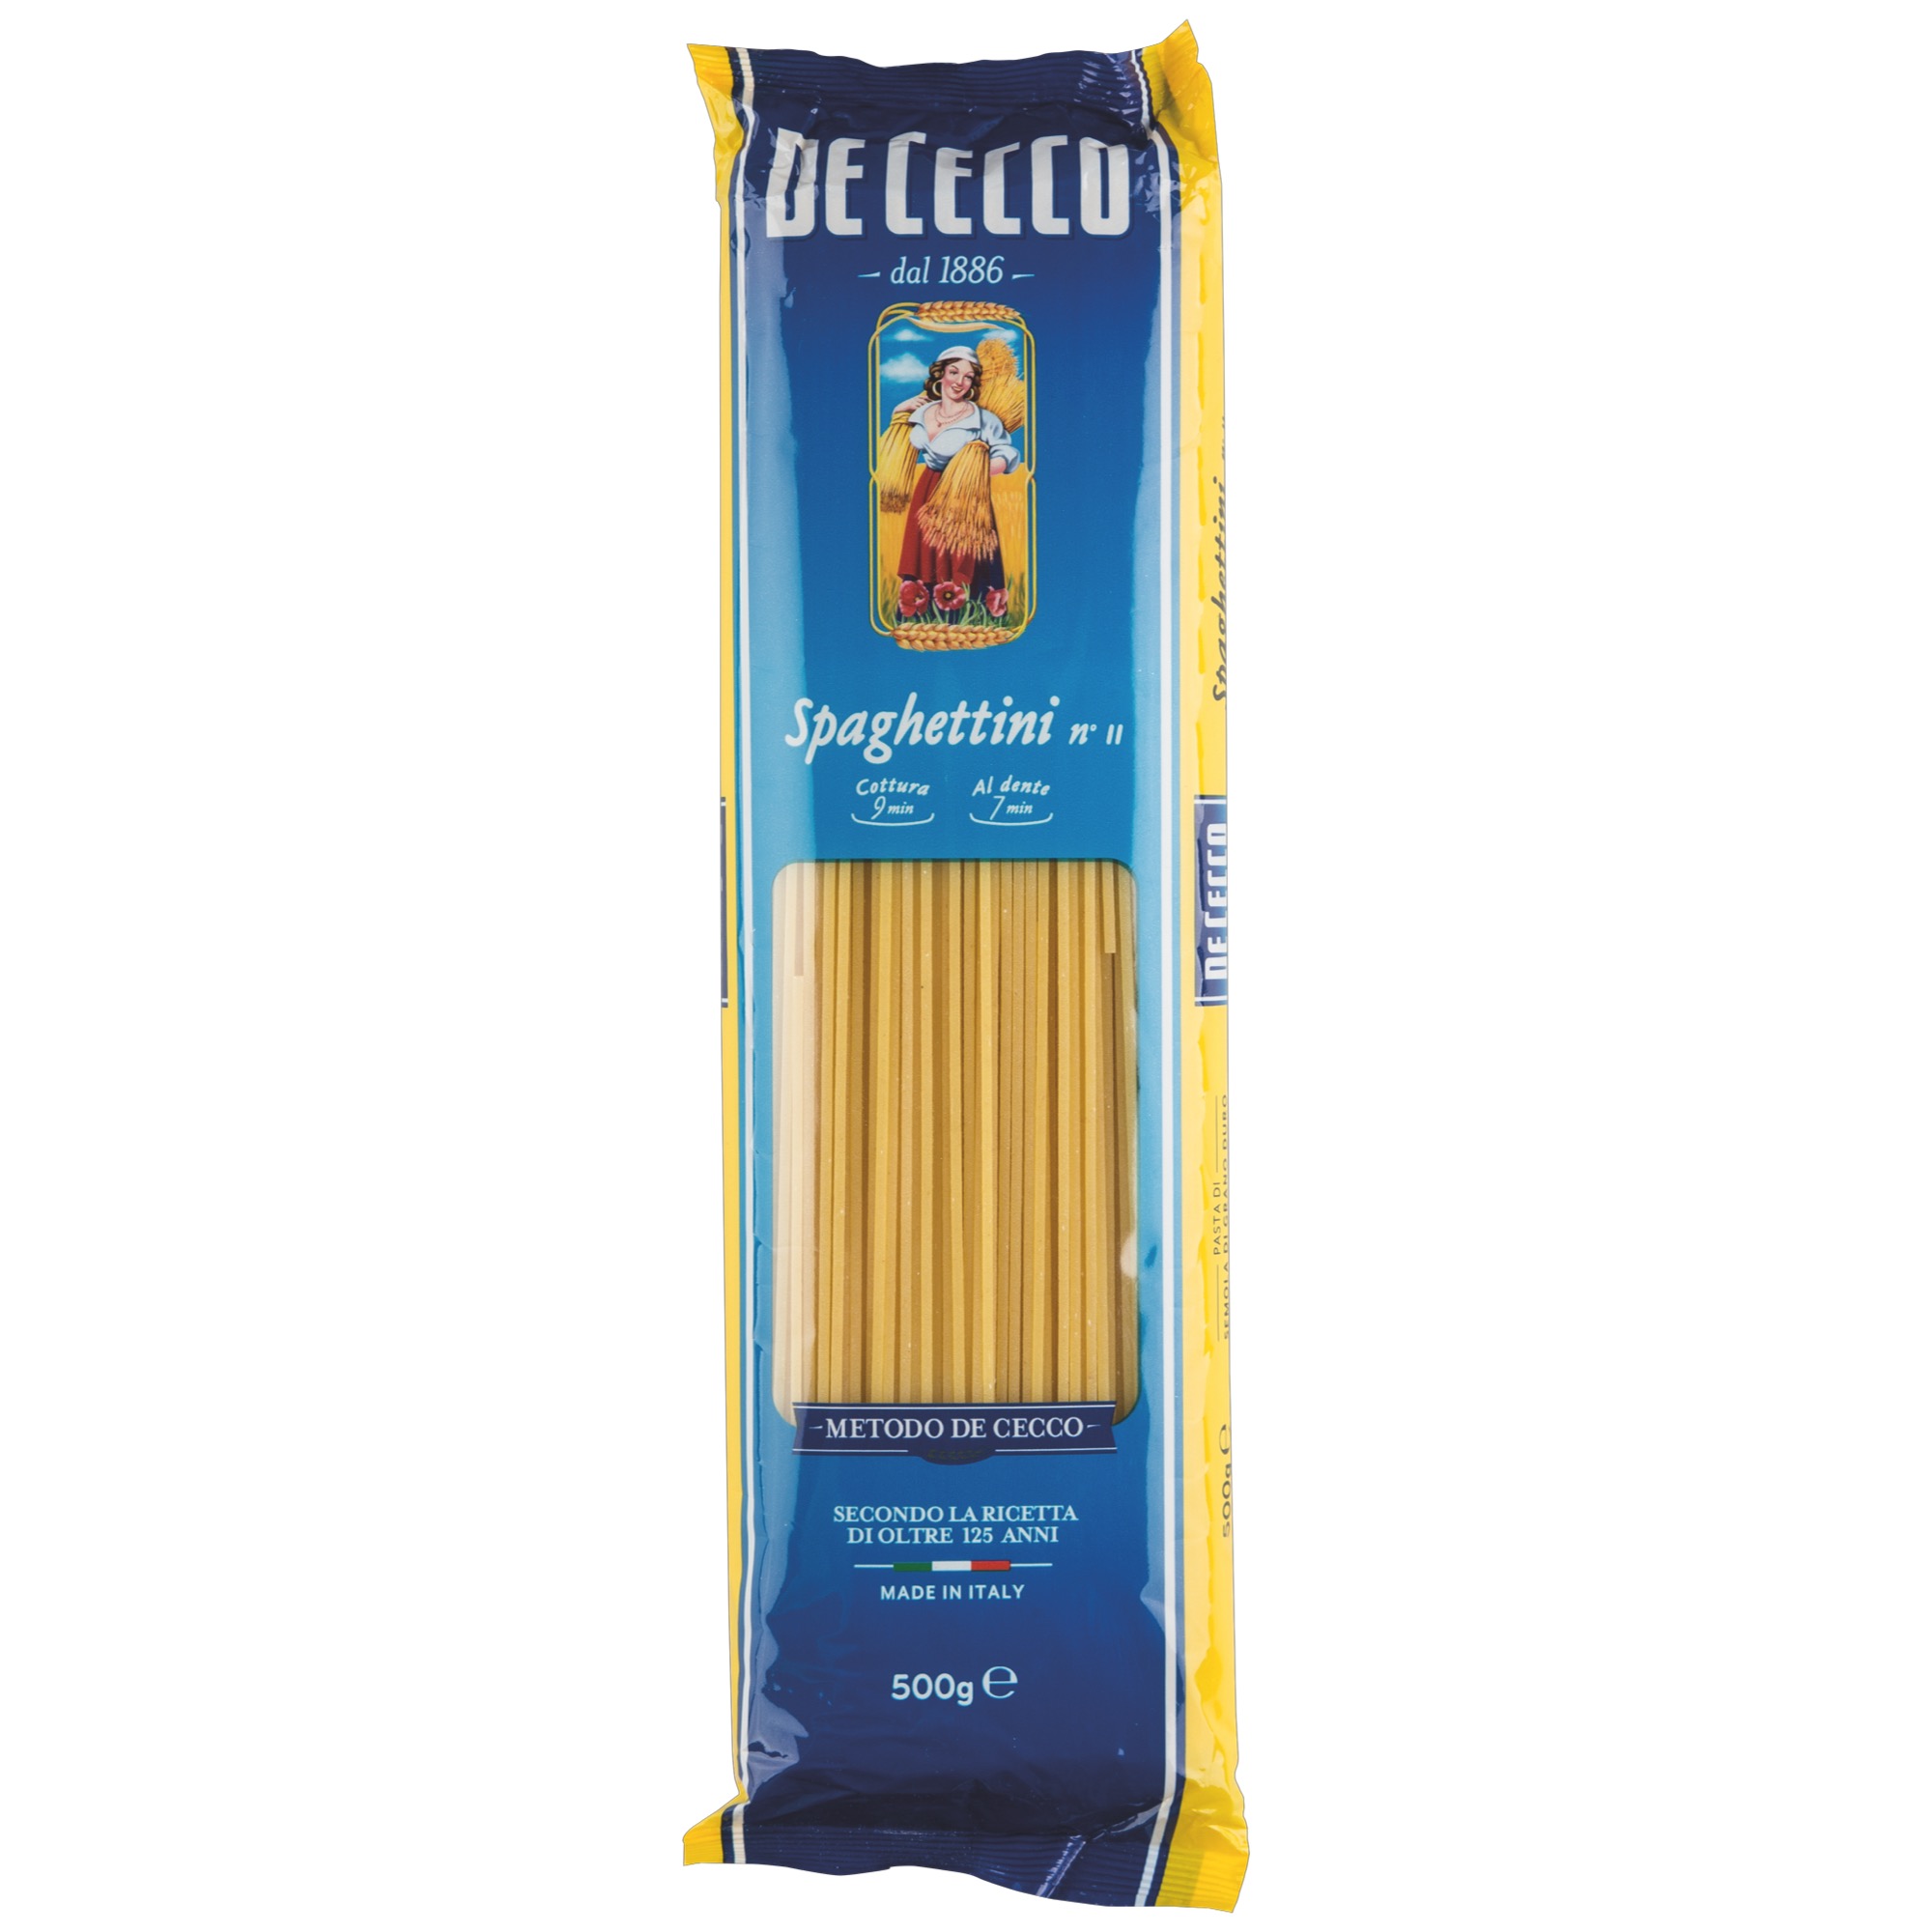 De Cecco 500g, Spaghettini